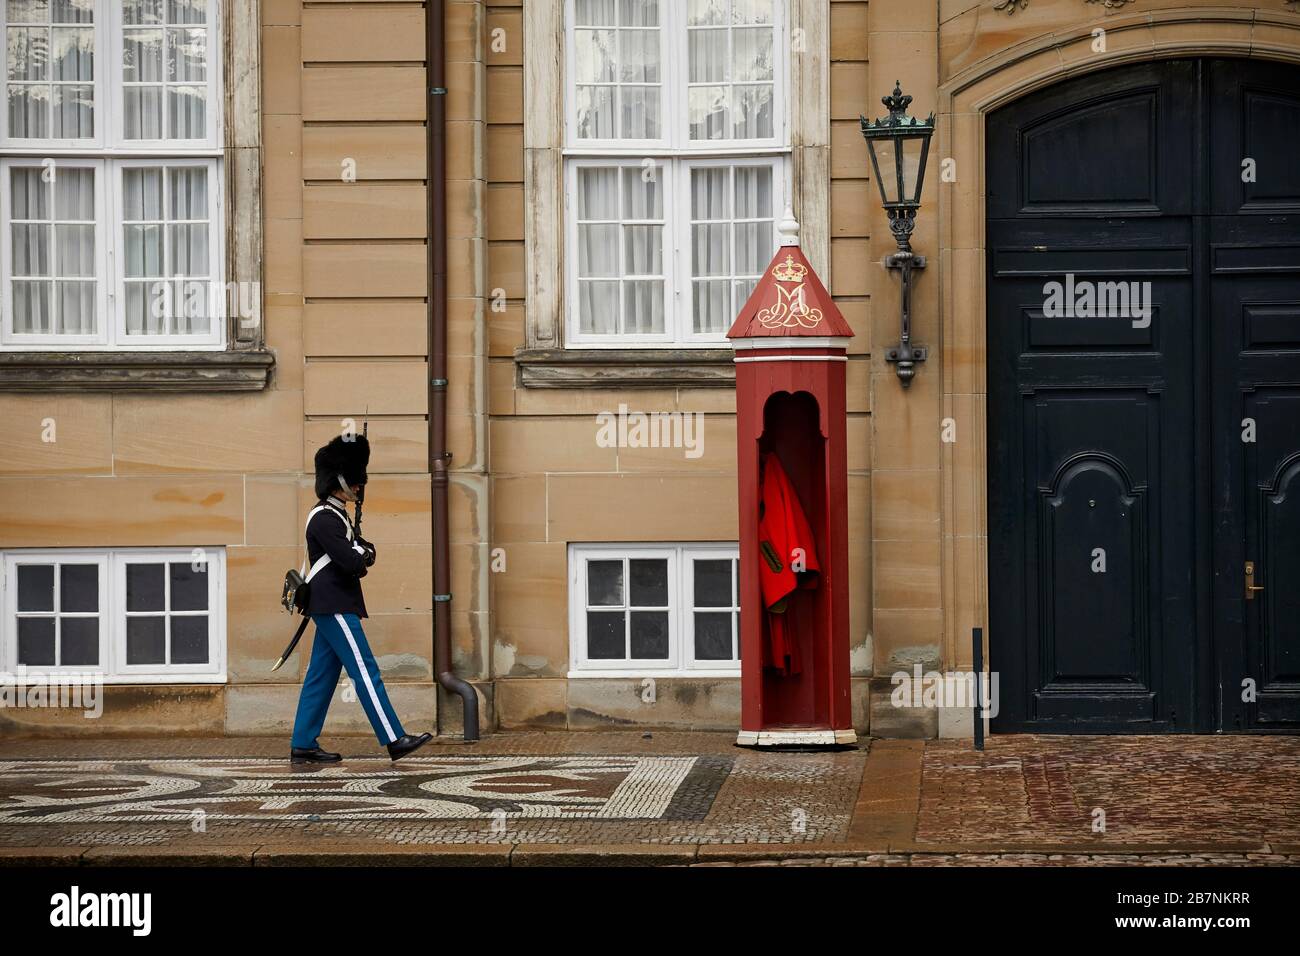 Copenhague, capitale du Danemark, Amalienborg, complexe rococo du XVIIIe siècle de palais, avec musée et marches/expositions de gardes royaux Banque D'Images